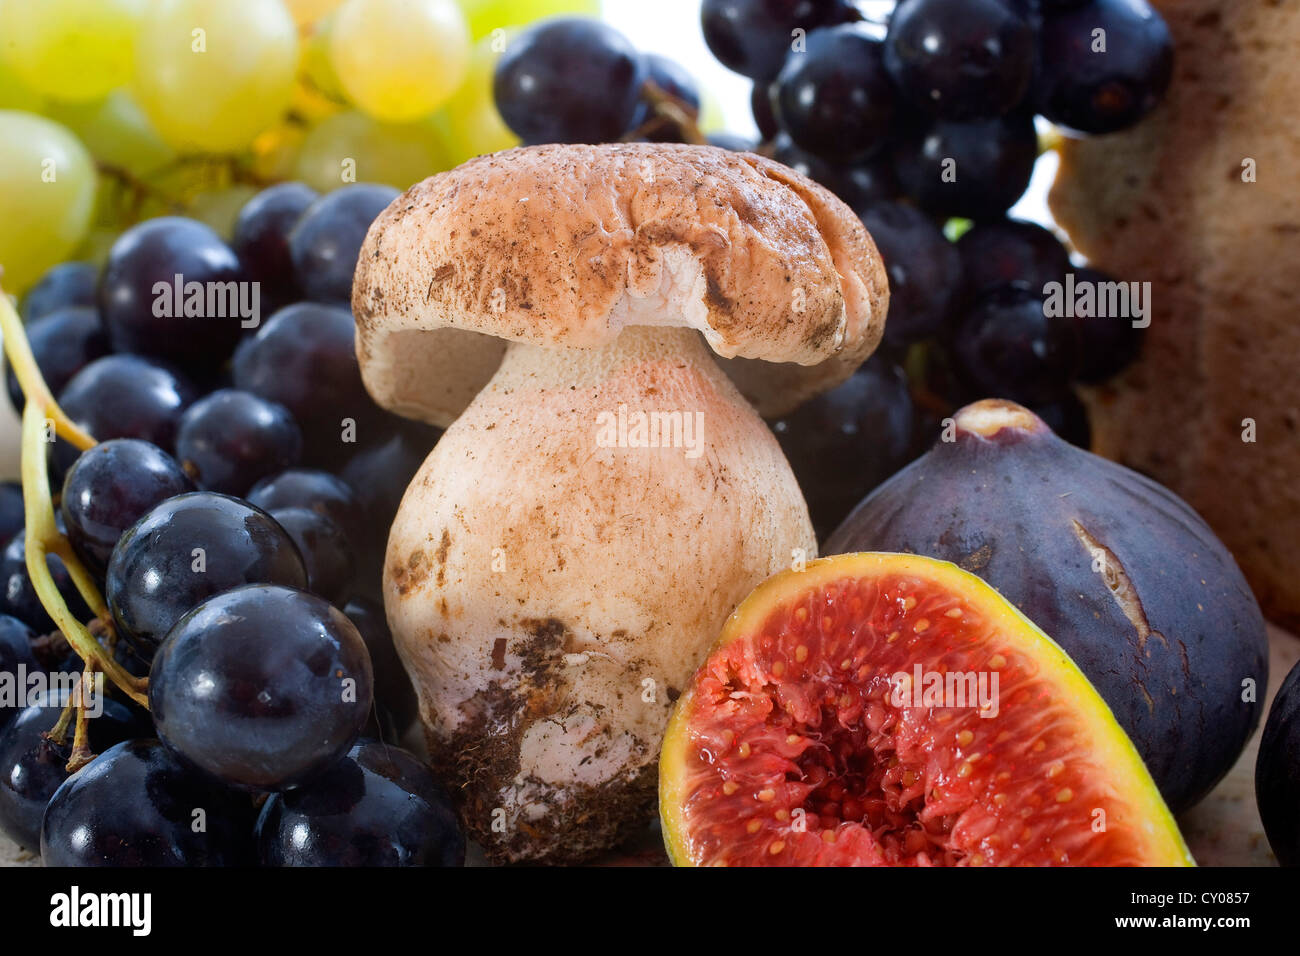 Fruits et champignons porcini dans une composition d'automne Banque D'Images